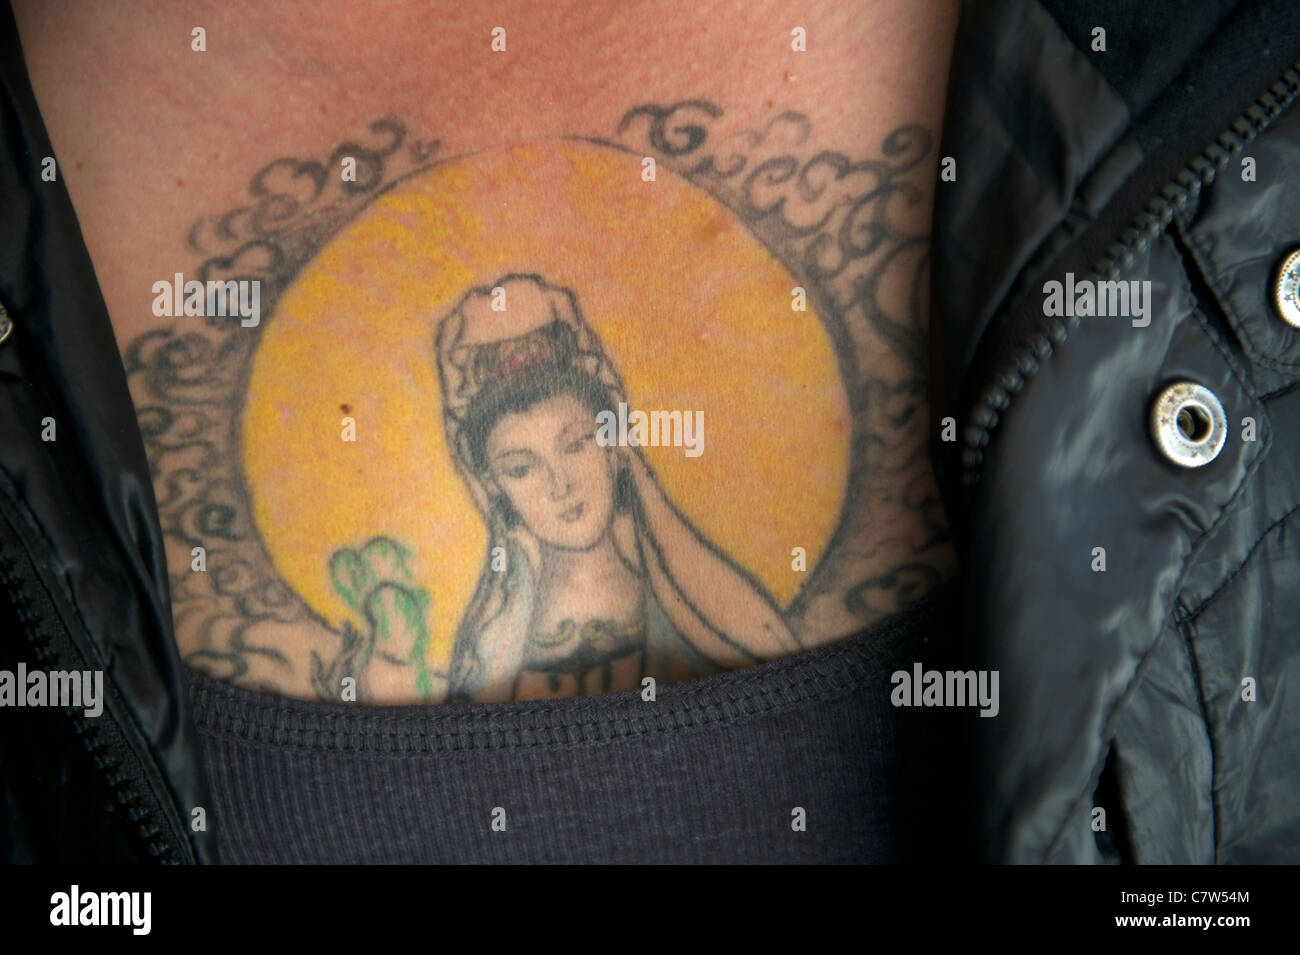 Un homme chinois tatouage de Kwan Yin, déesse chinoise de la Compassion. 22-Sep-2011 Banque D'Images